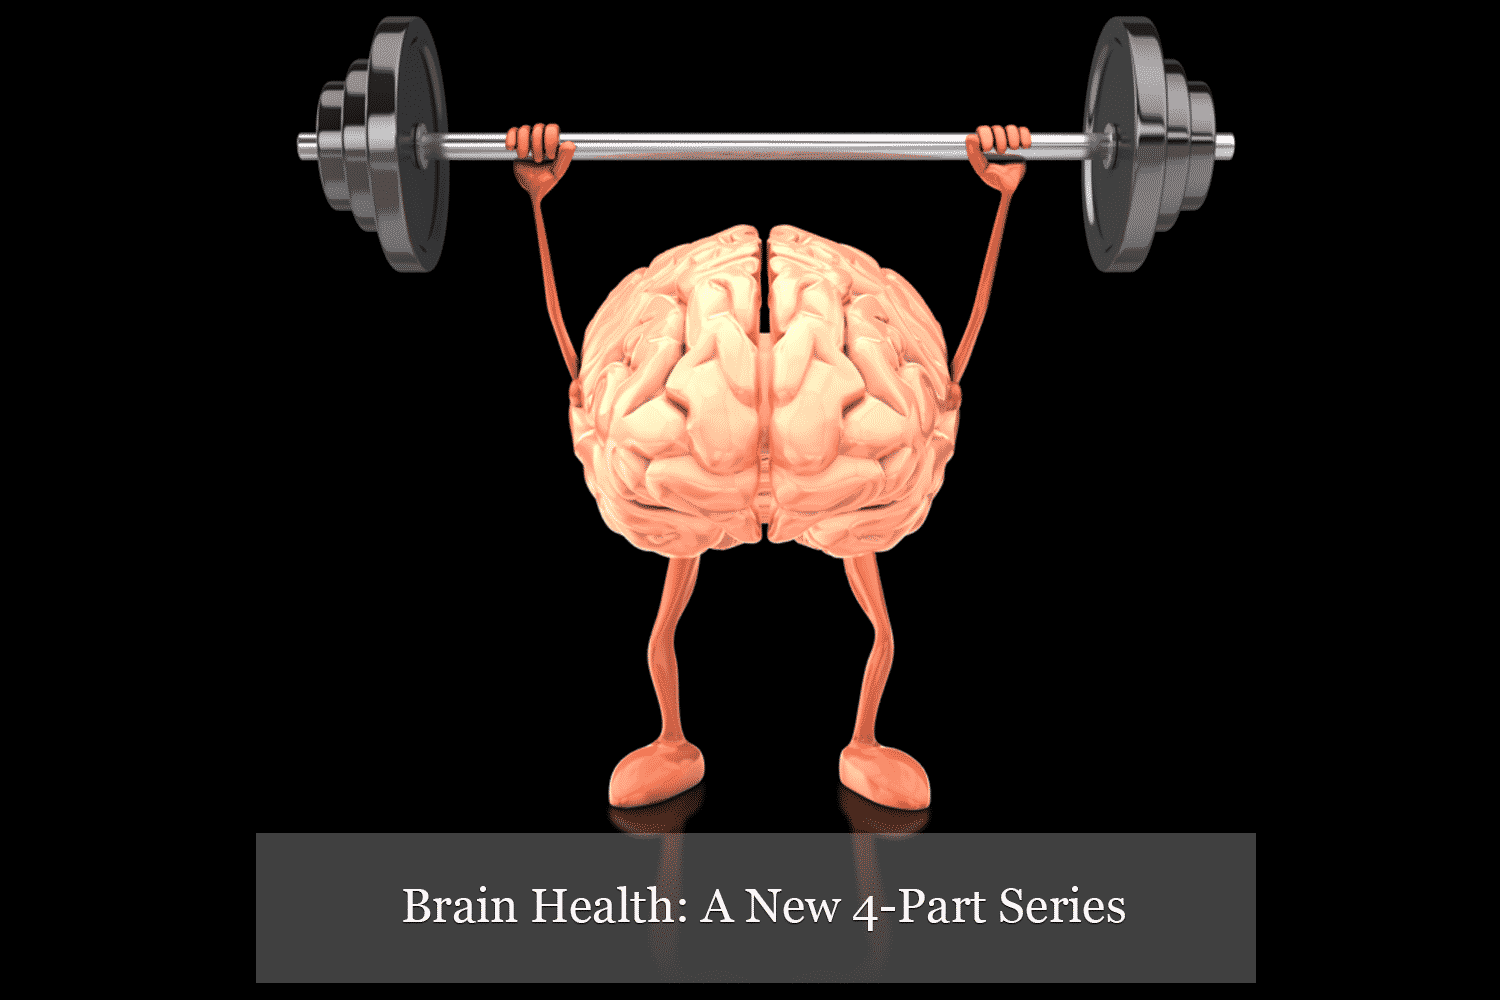 Brain Health: A New 4-Part Series